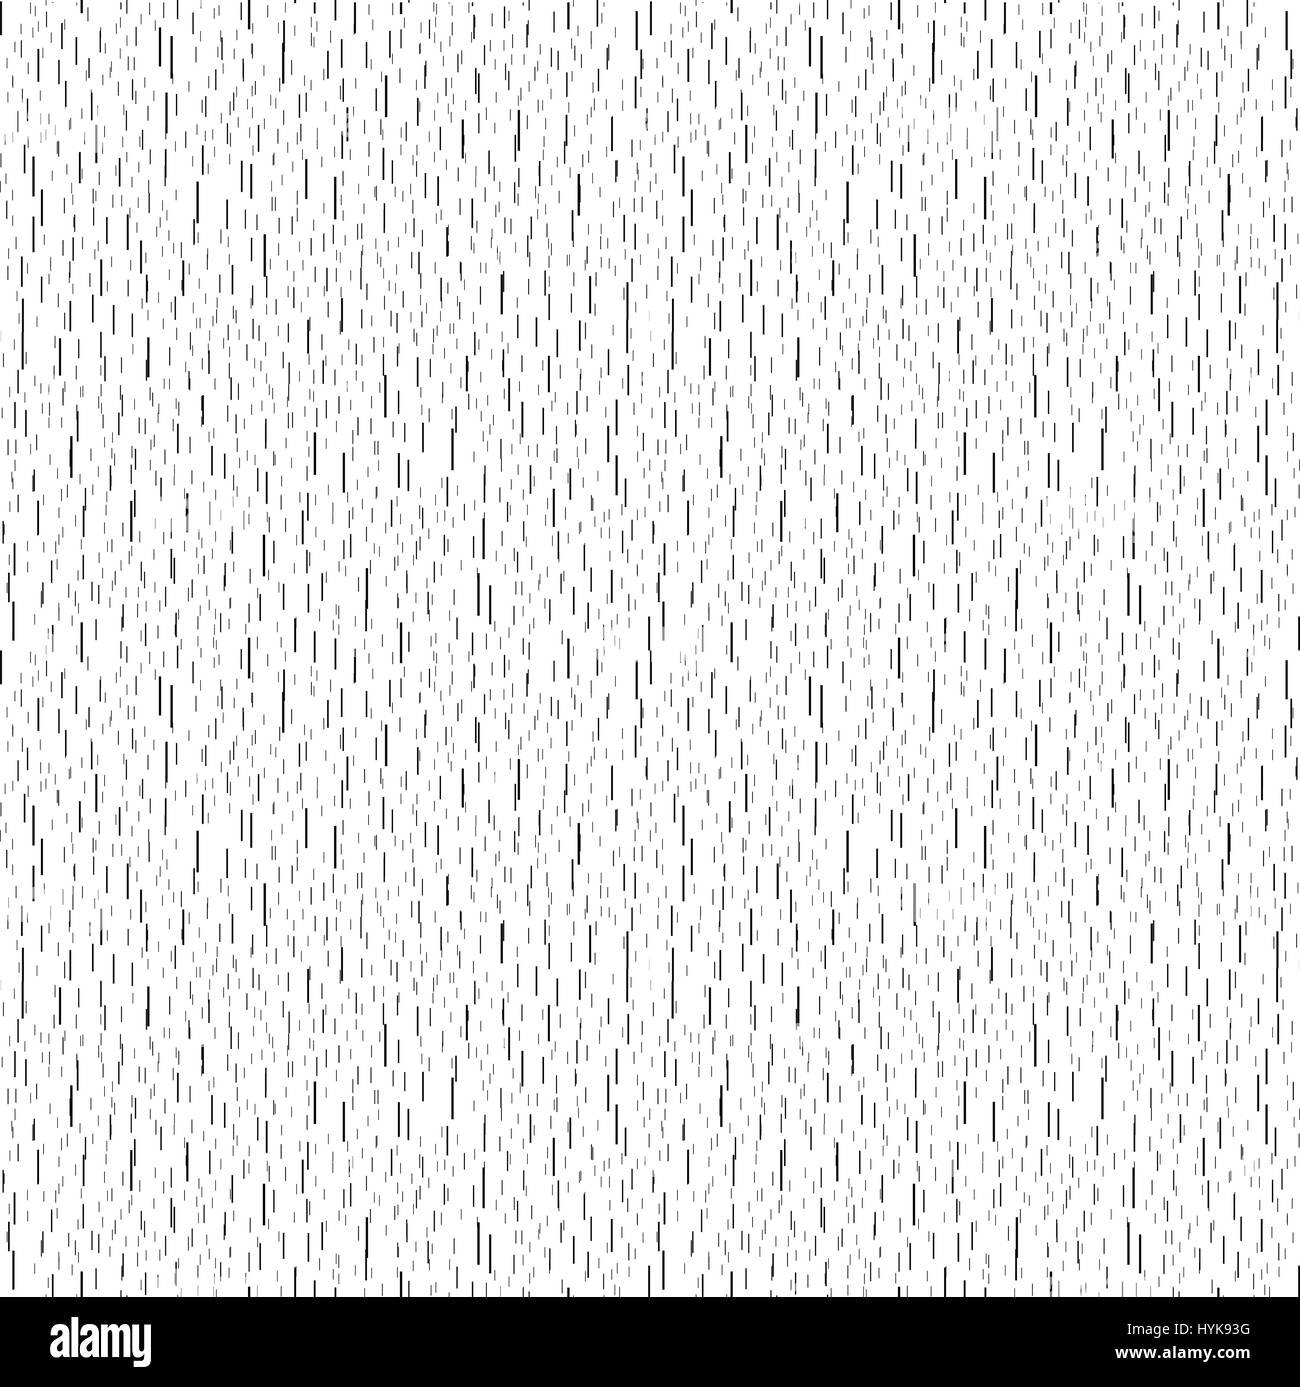 Abstract isolato stilizzata sullo sfondo di pioggia, caduta di gocce di acqua la texture, nero corse verticali su sfondo bianco illustrazione vettoriale Illustrazione Vettoriale